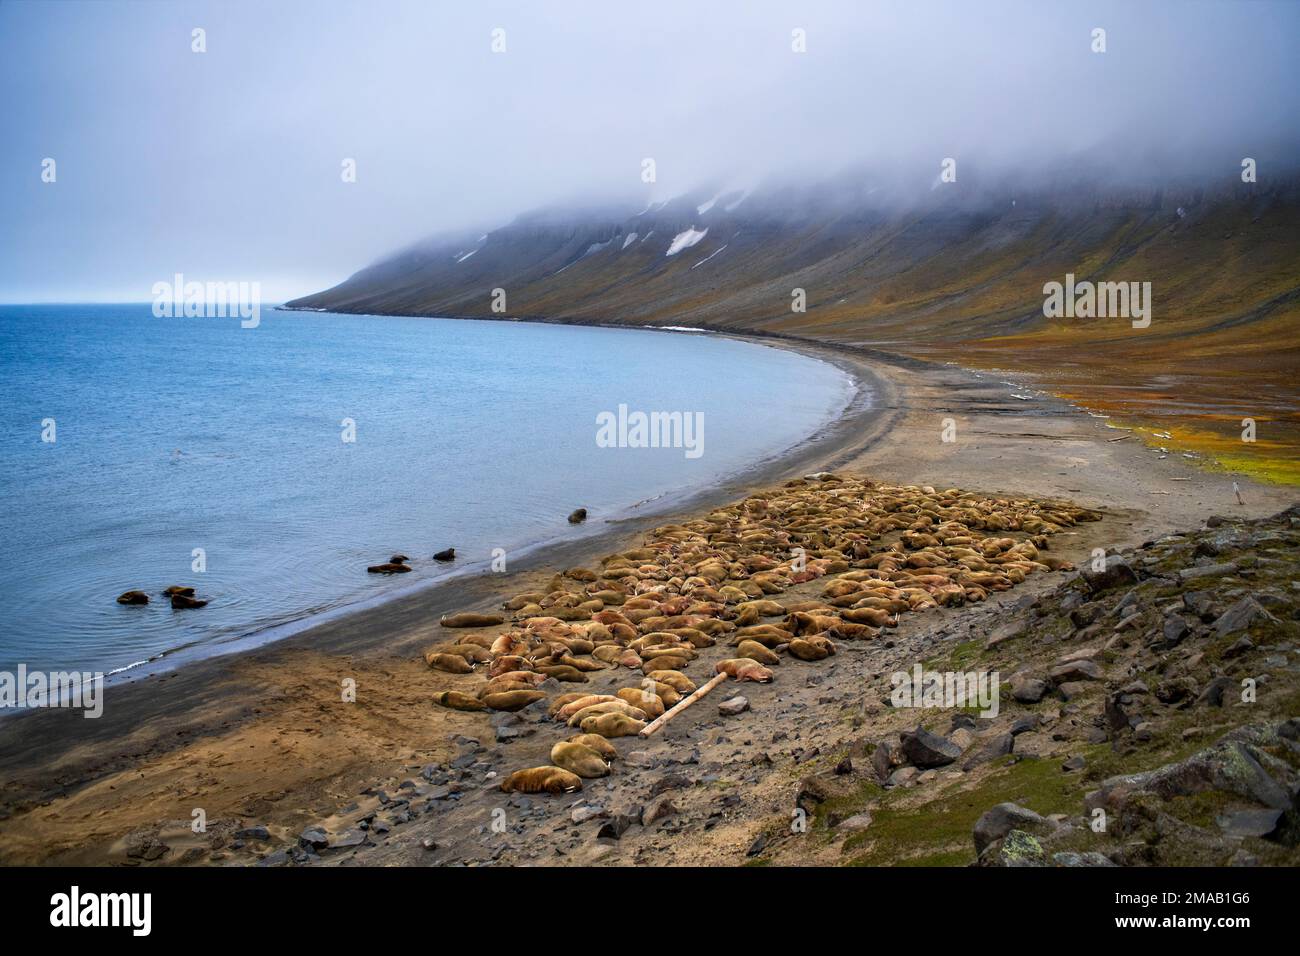 Colonie de morses (Odobenus rosmarus), dans la baie Faksevagen Fakse (Faksevagen). Expédition navire de croisière Greg Mortimer dans l'archipel de Svalbard, dans l'Arctique de la Norvège Banque D'Images